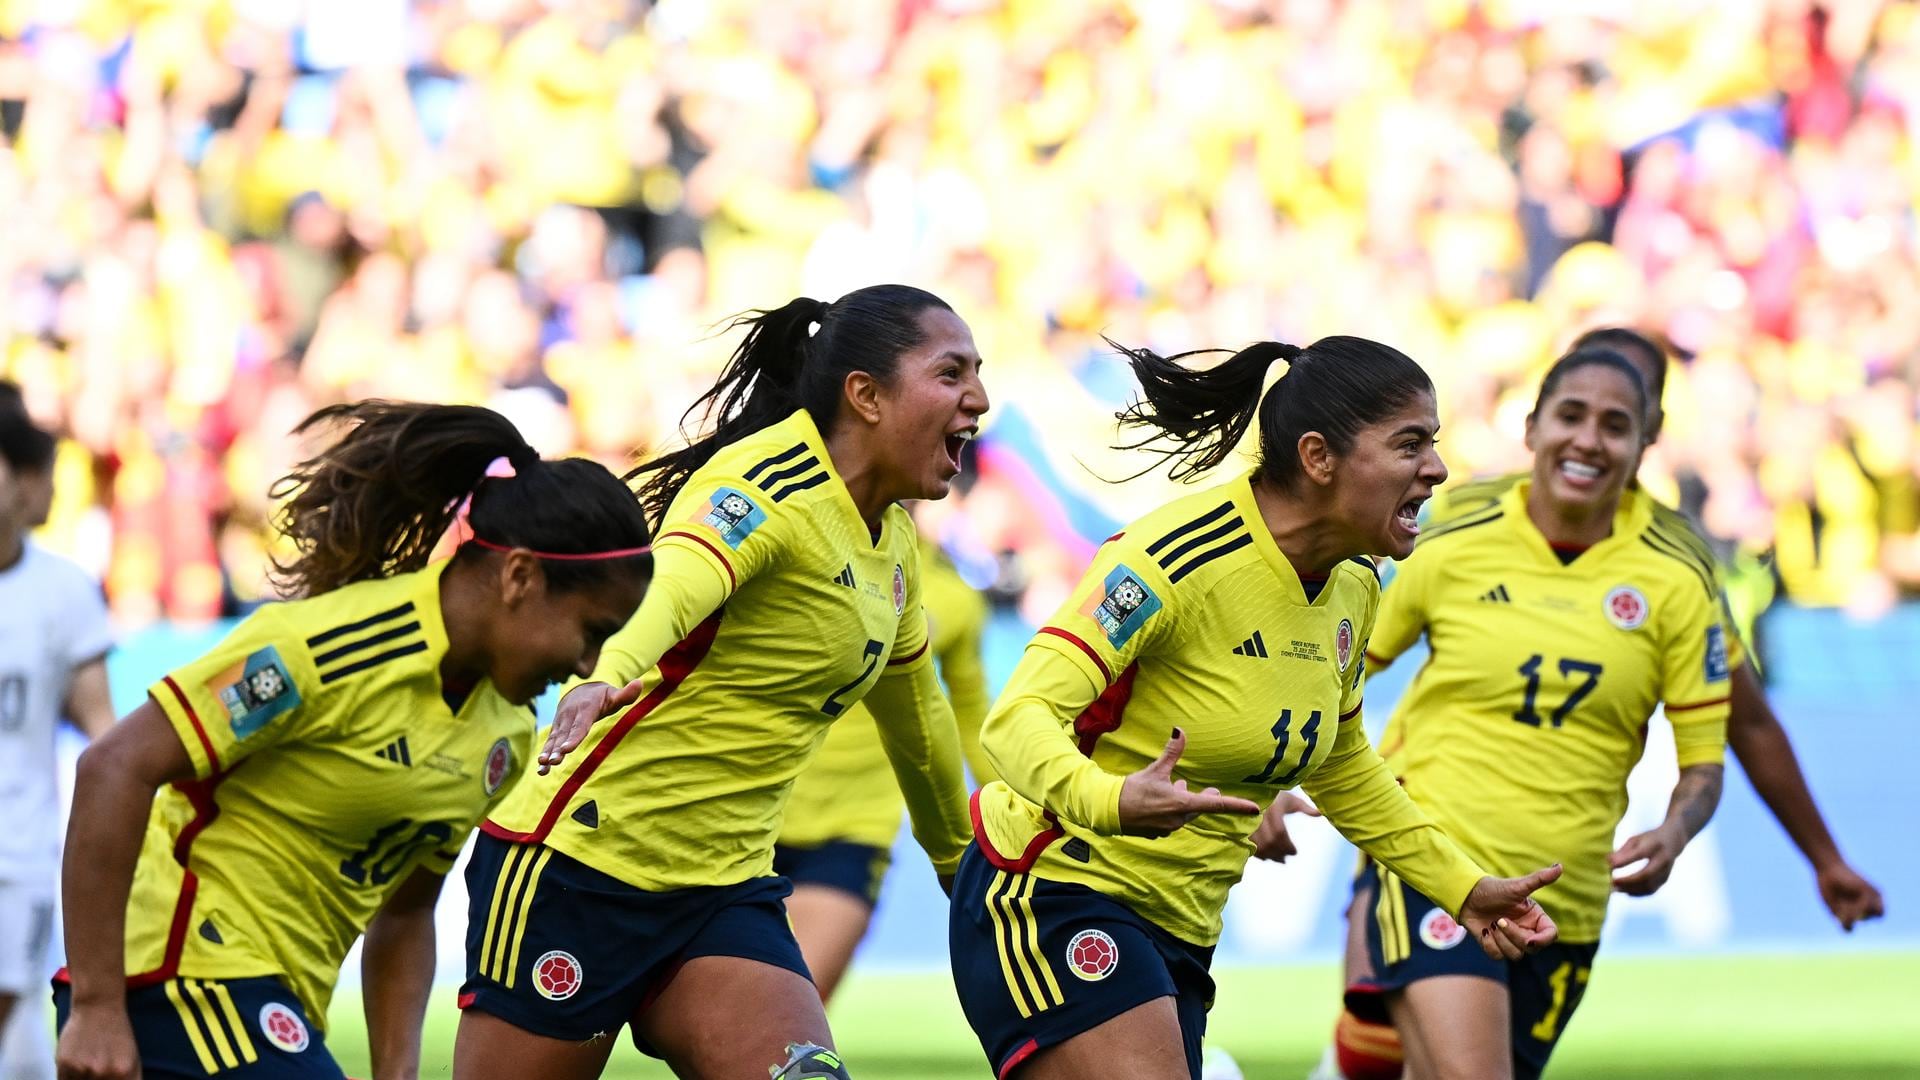 Colombia vs Alemania: hora exacta del juego que promocionan a las 4 de la mañana